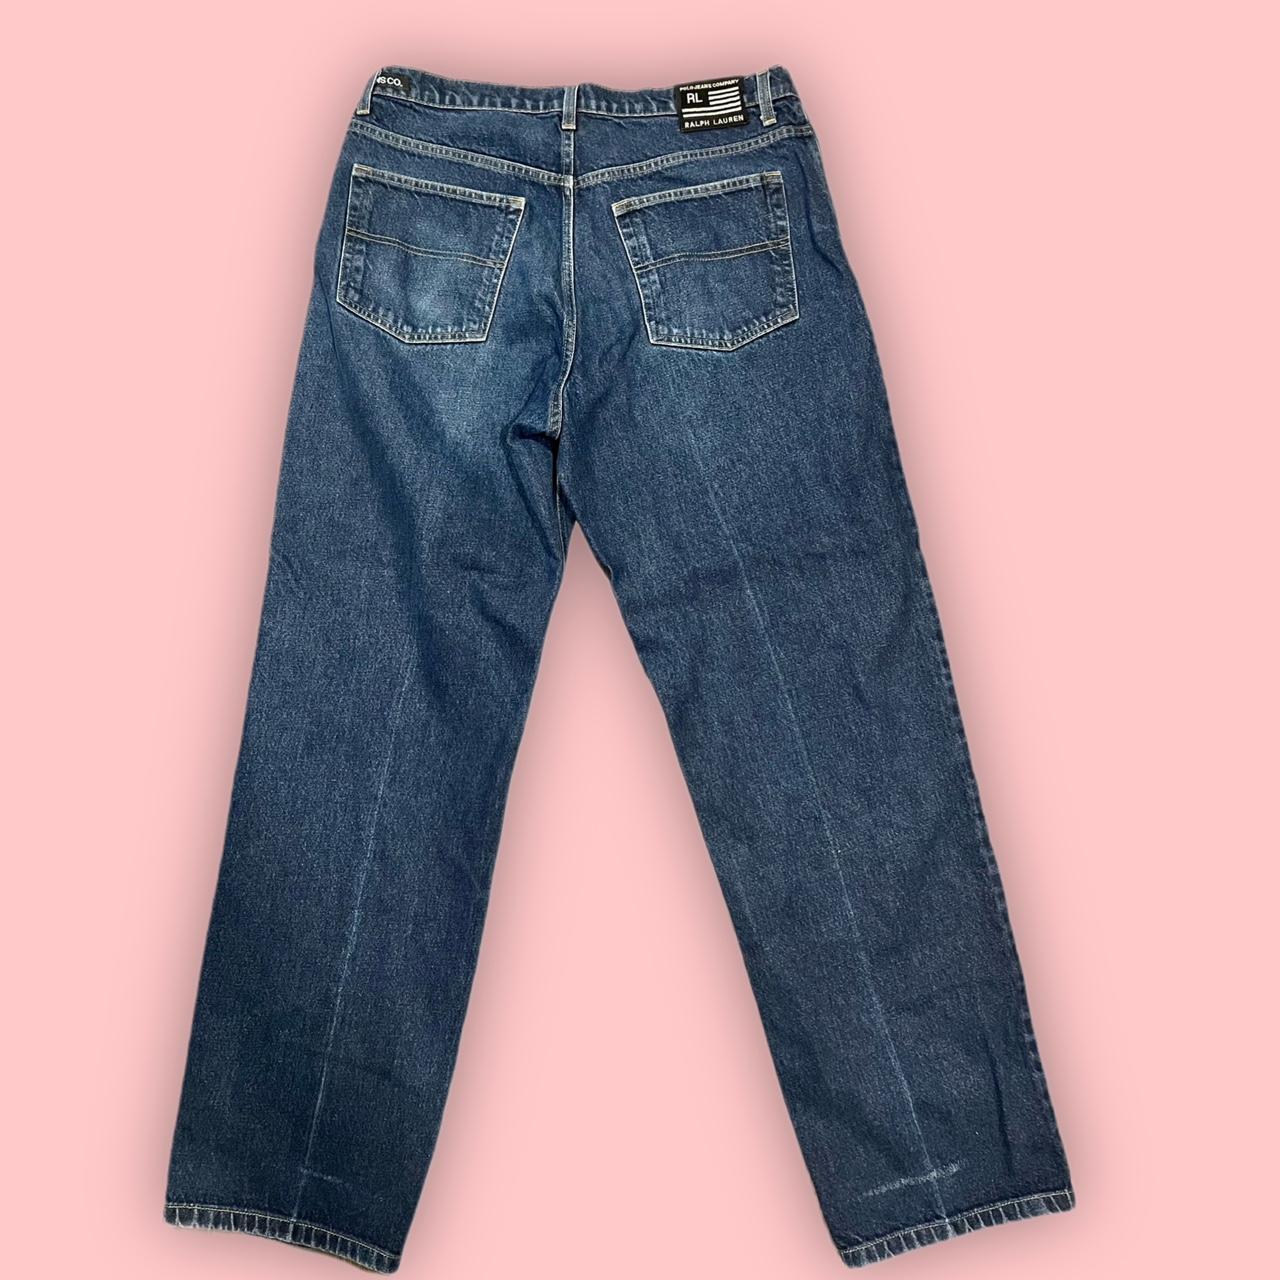 Polo Ralph Lauren Men's Navy Jeans | Depop